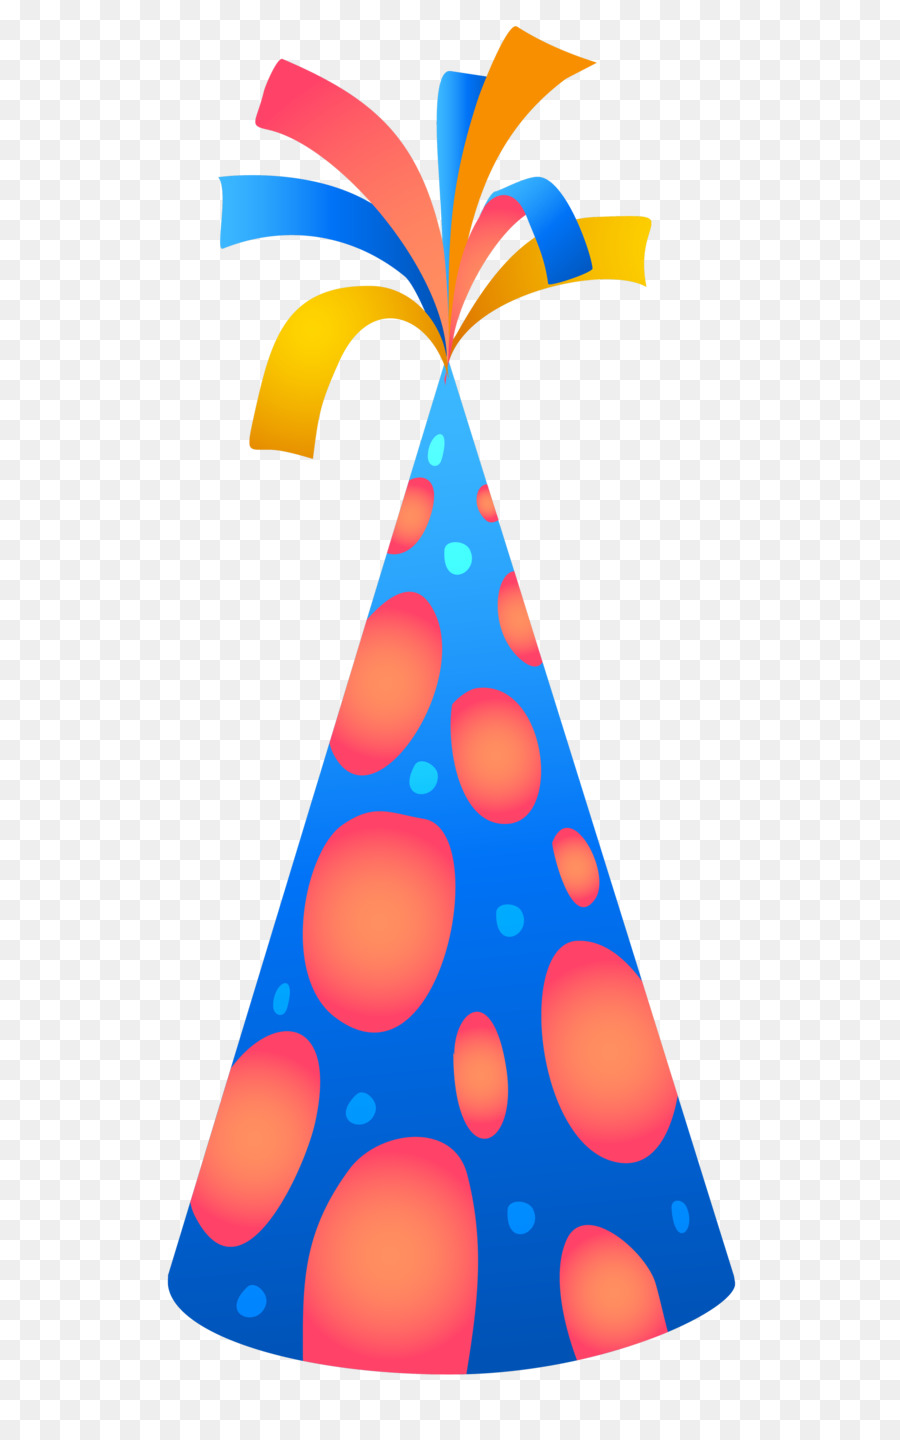 Geburtstag-Kuchen-Gruß-Karte Wünschen, Geburtstag, Bräuchen und Feierlichkeiten - Party Hut